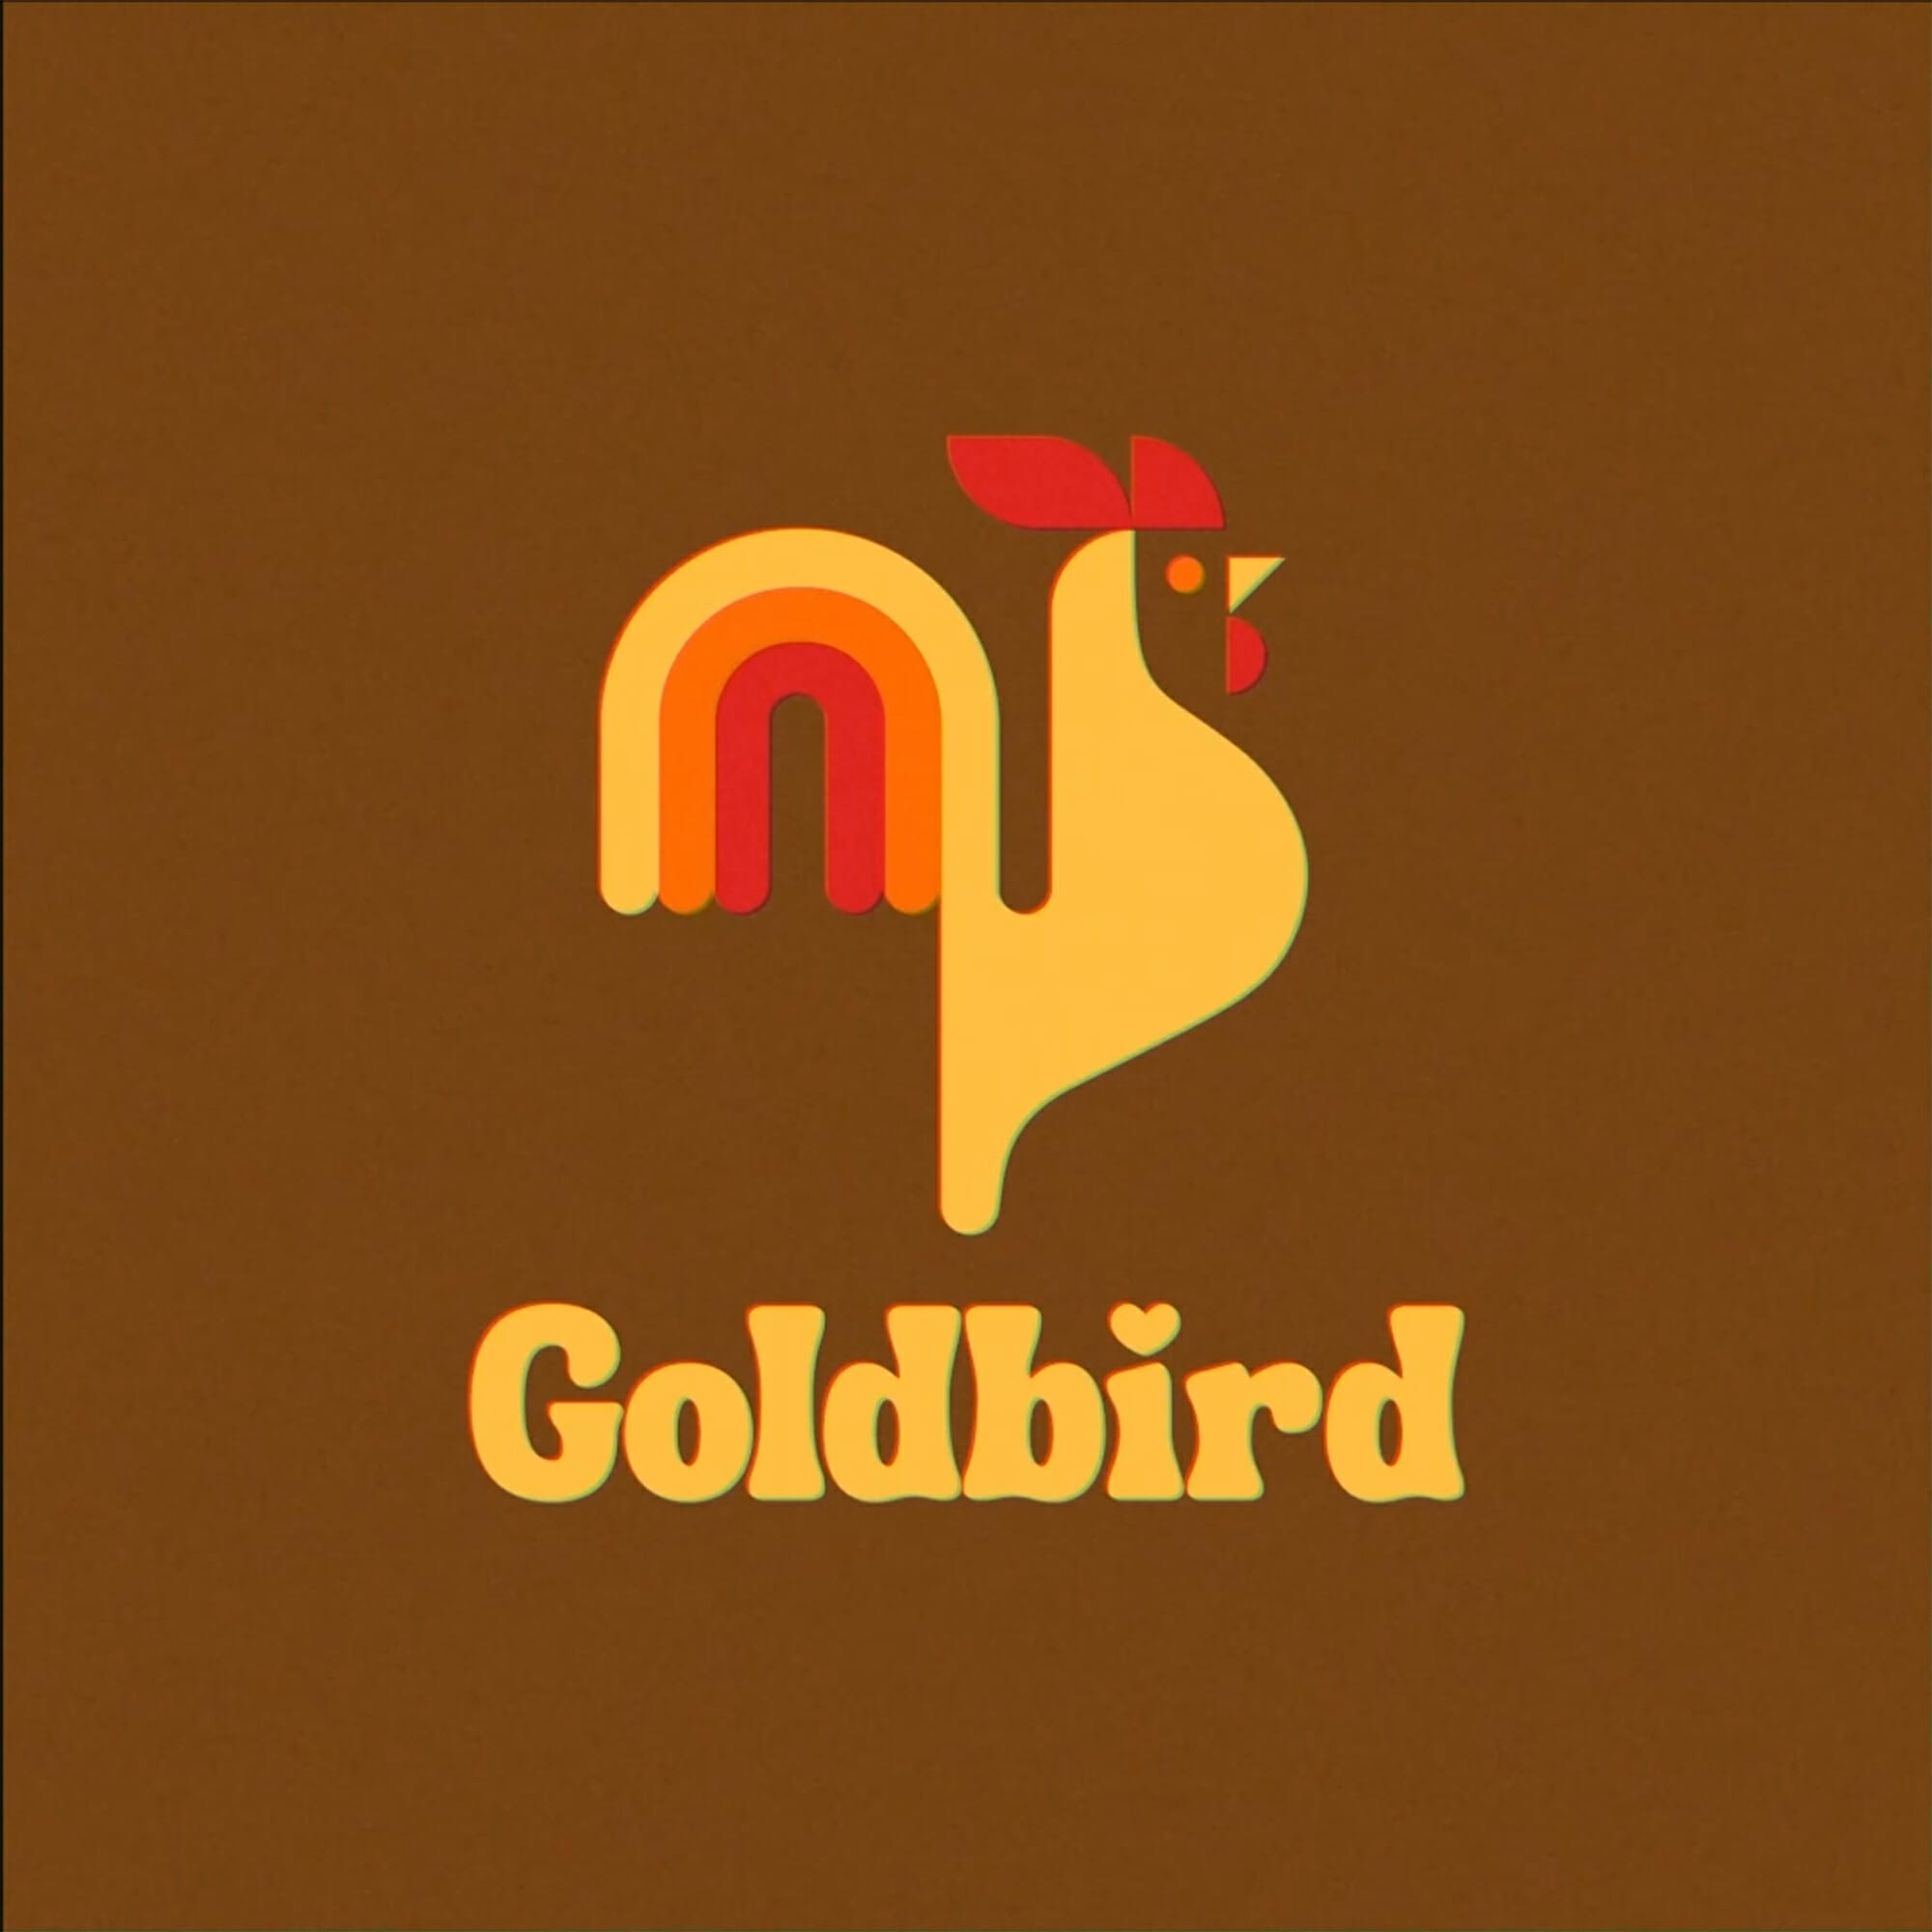 Goldbird Hot Chicken